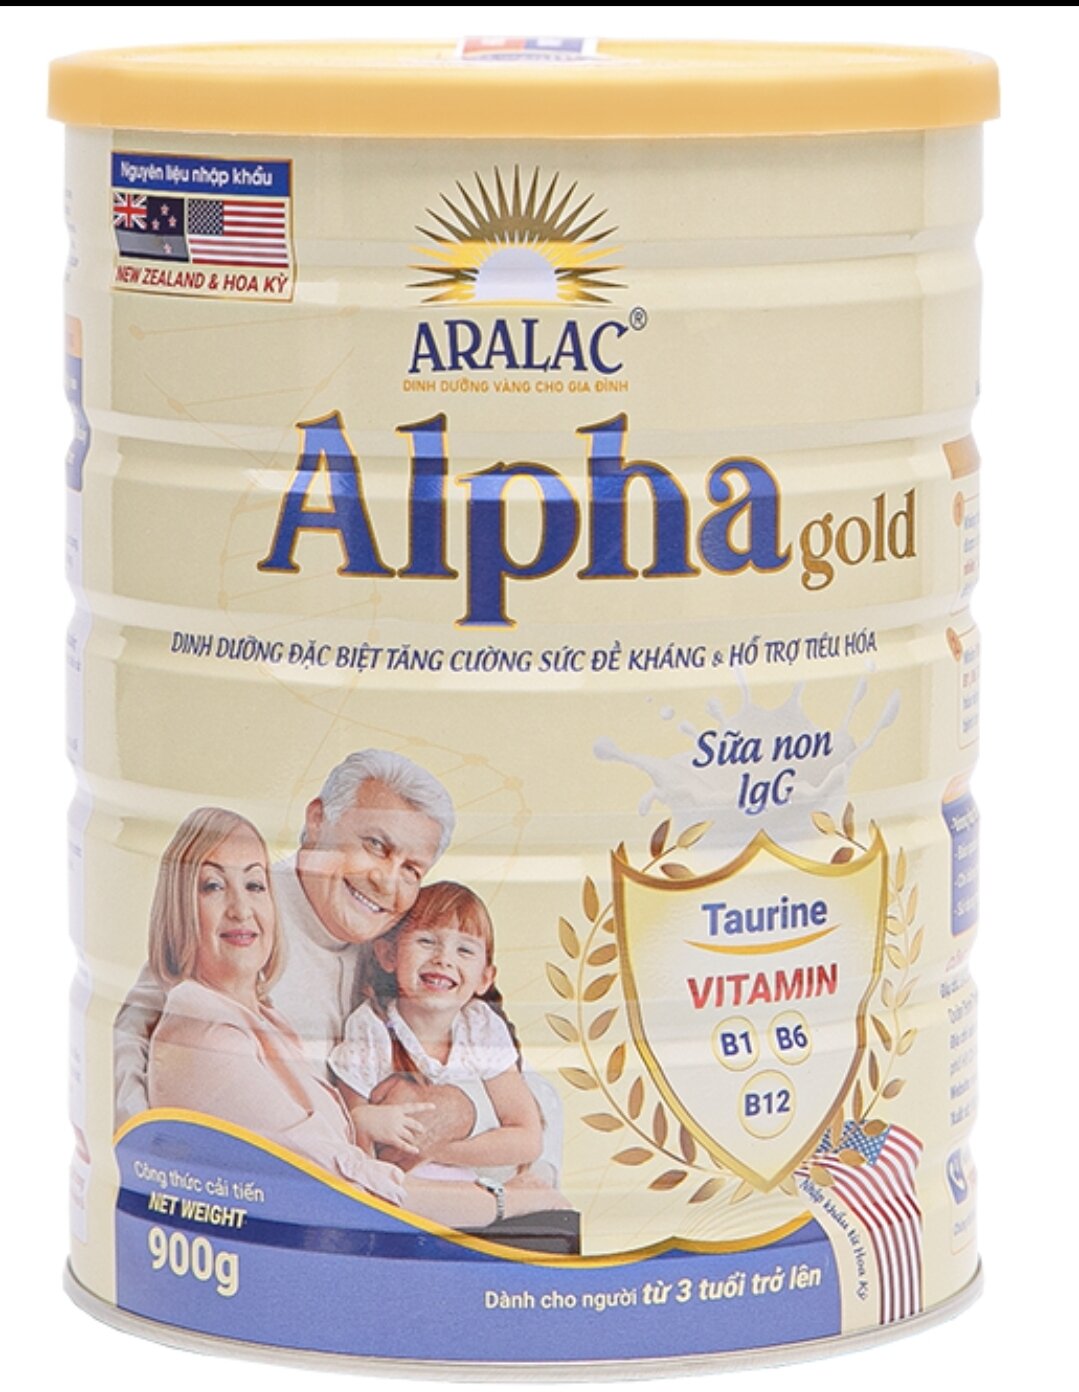 ARALAC ALPHA GOLD Dinh dưỡng đặc biệt tăng cường sức đề kháng